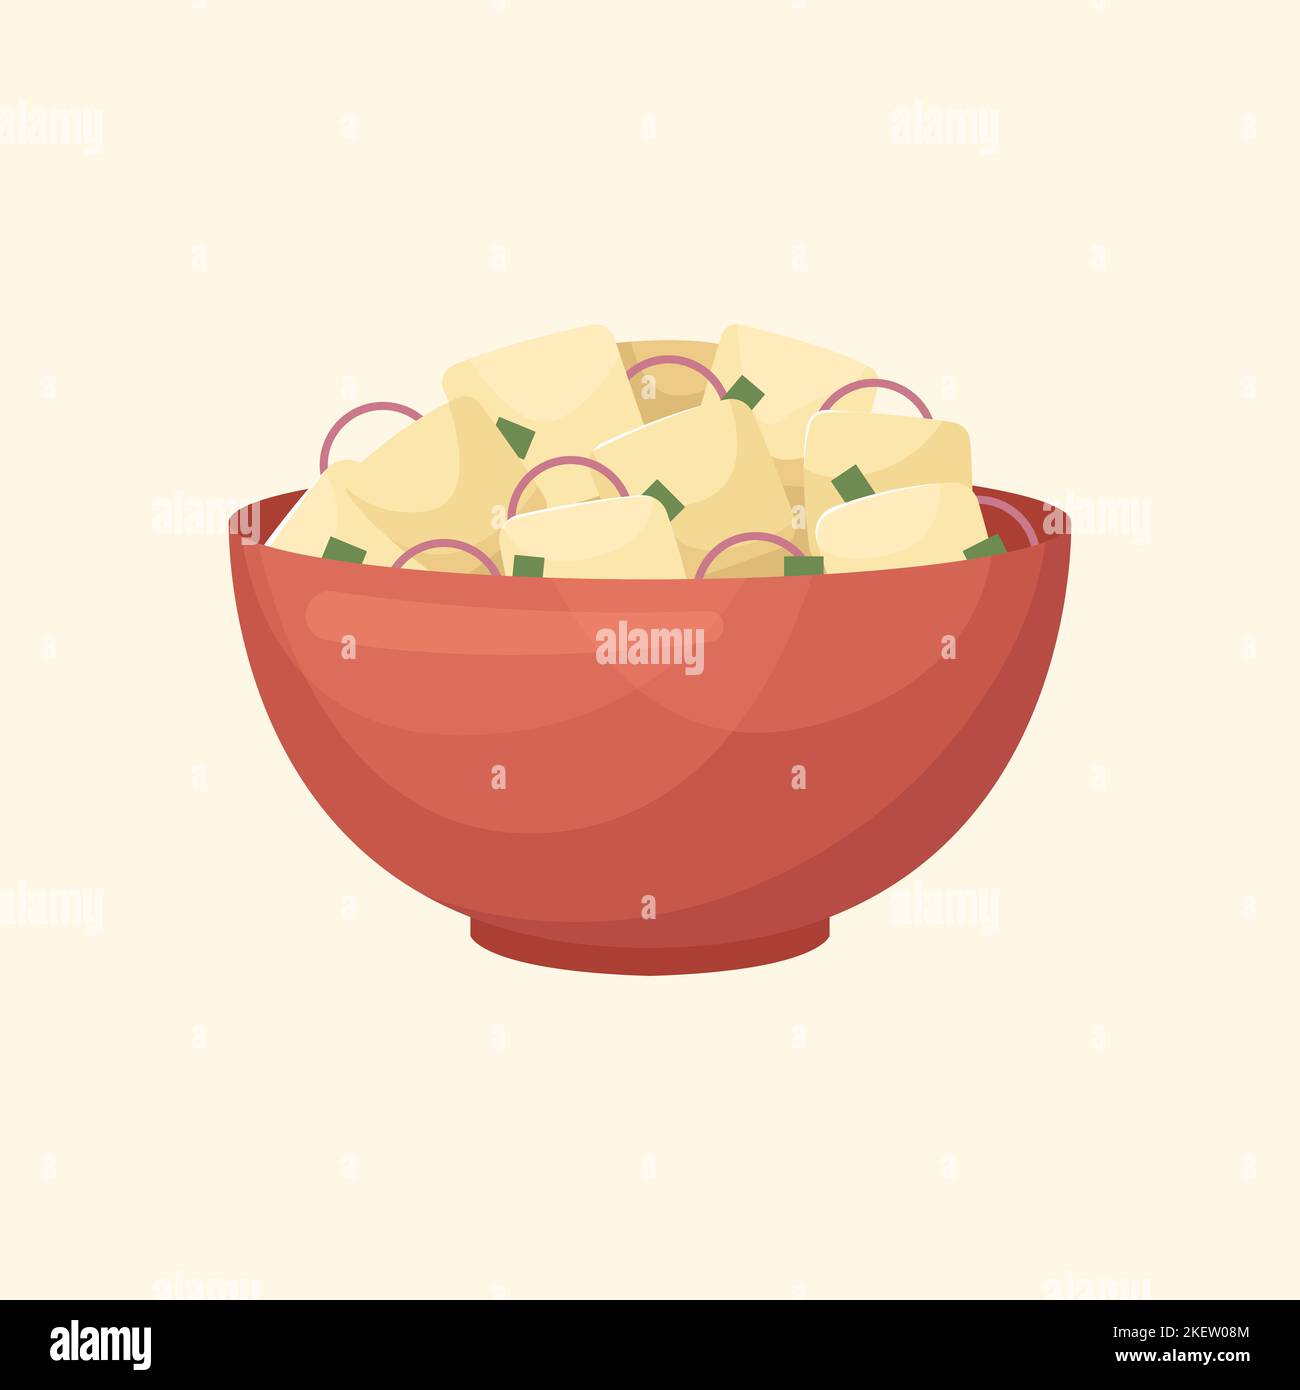 Vektor-Illustration eines amerikanischen Gerichts - Kartoffelsalat. Küche für Neujahr und Weihnachten. Flacher Style. Stock Vektor